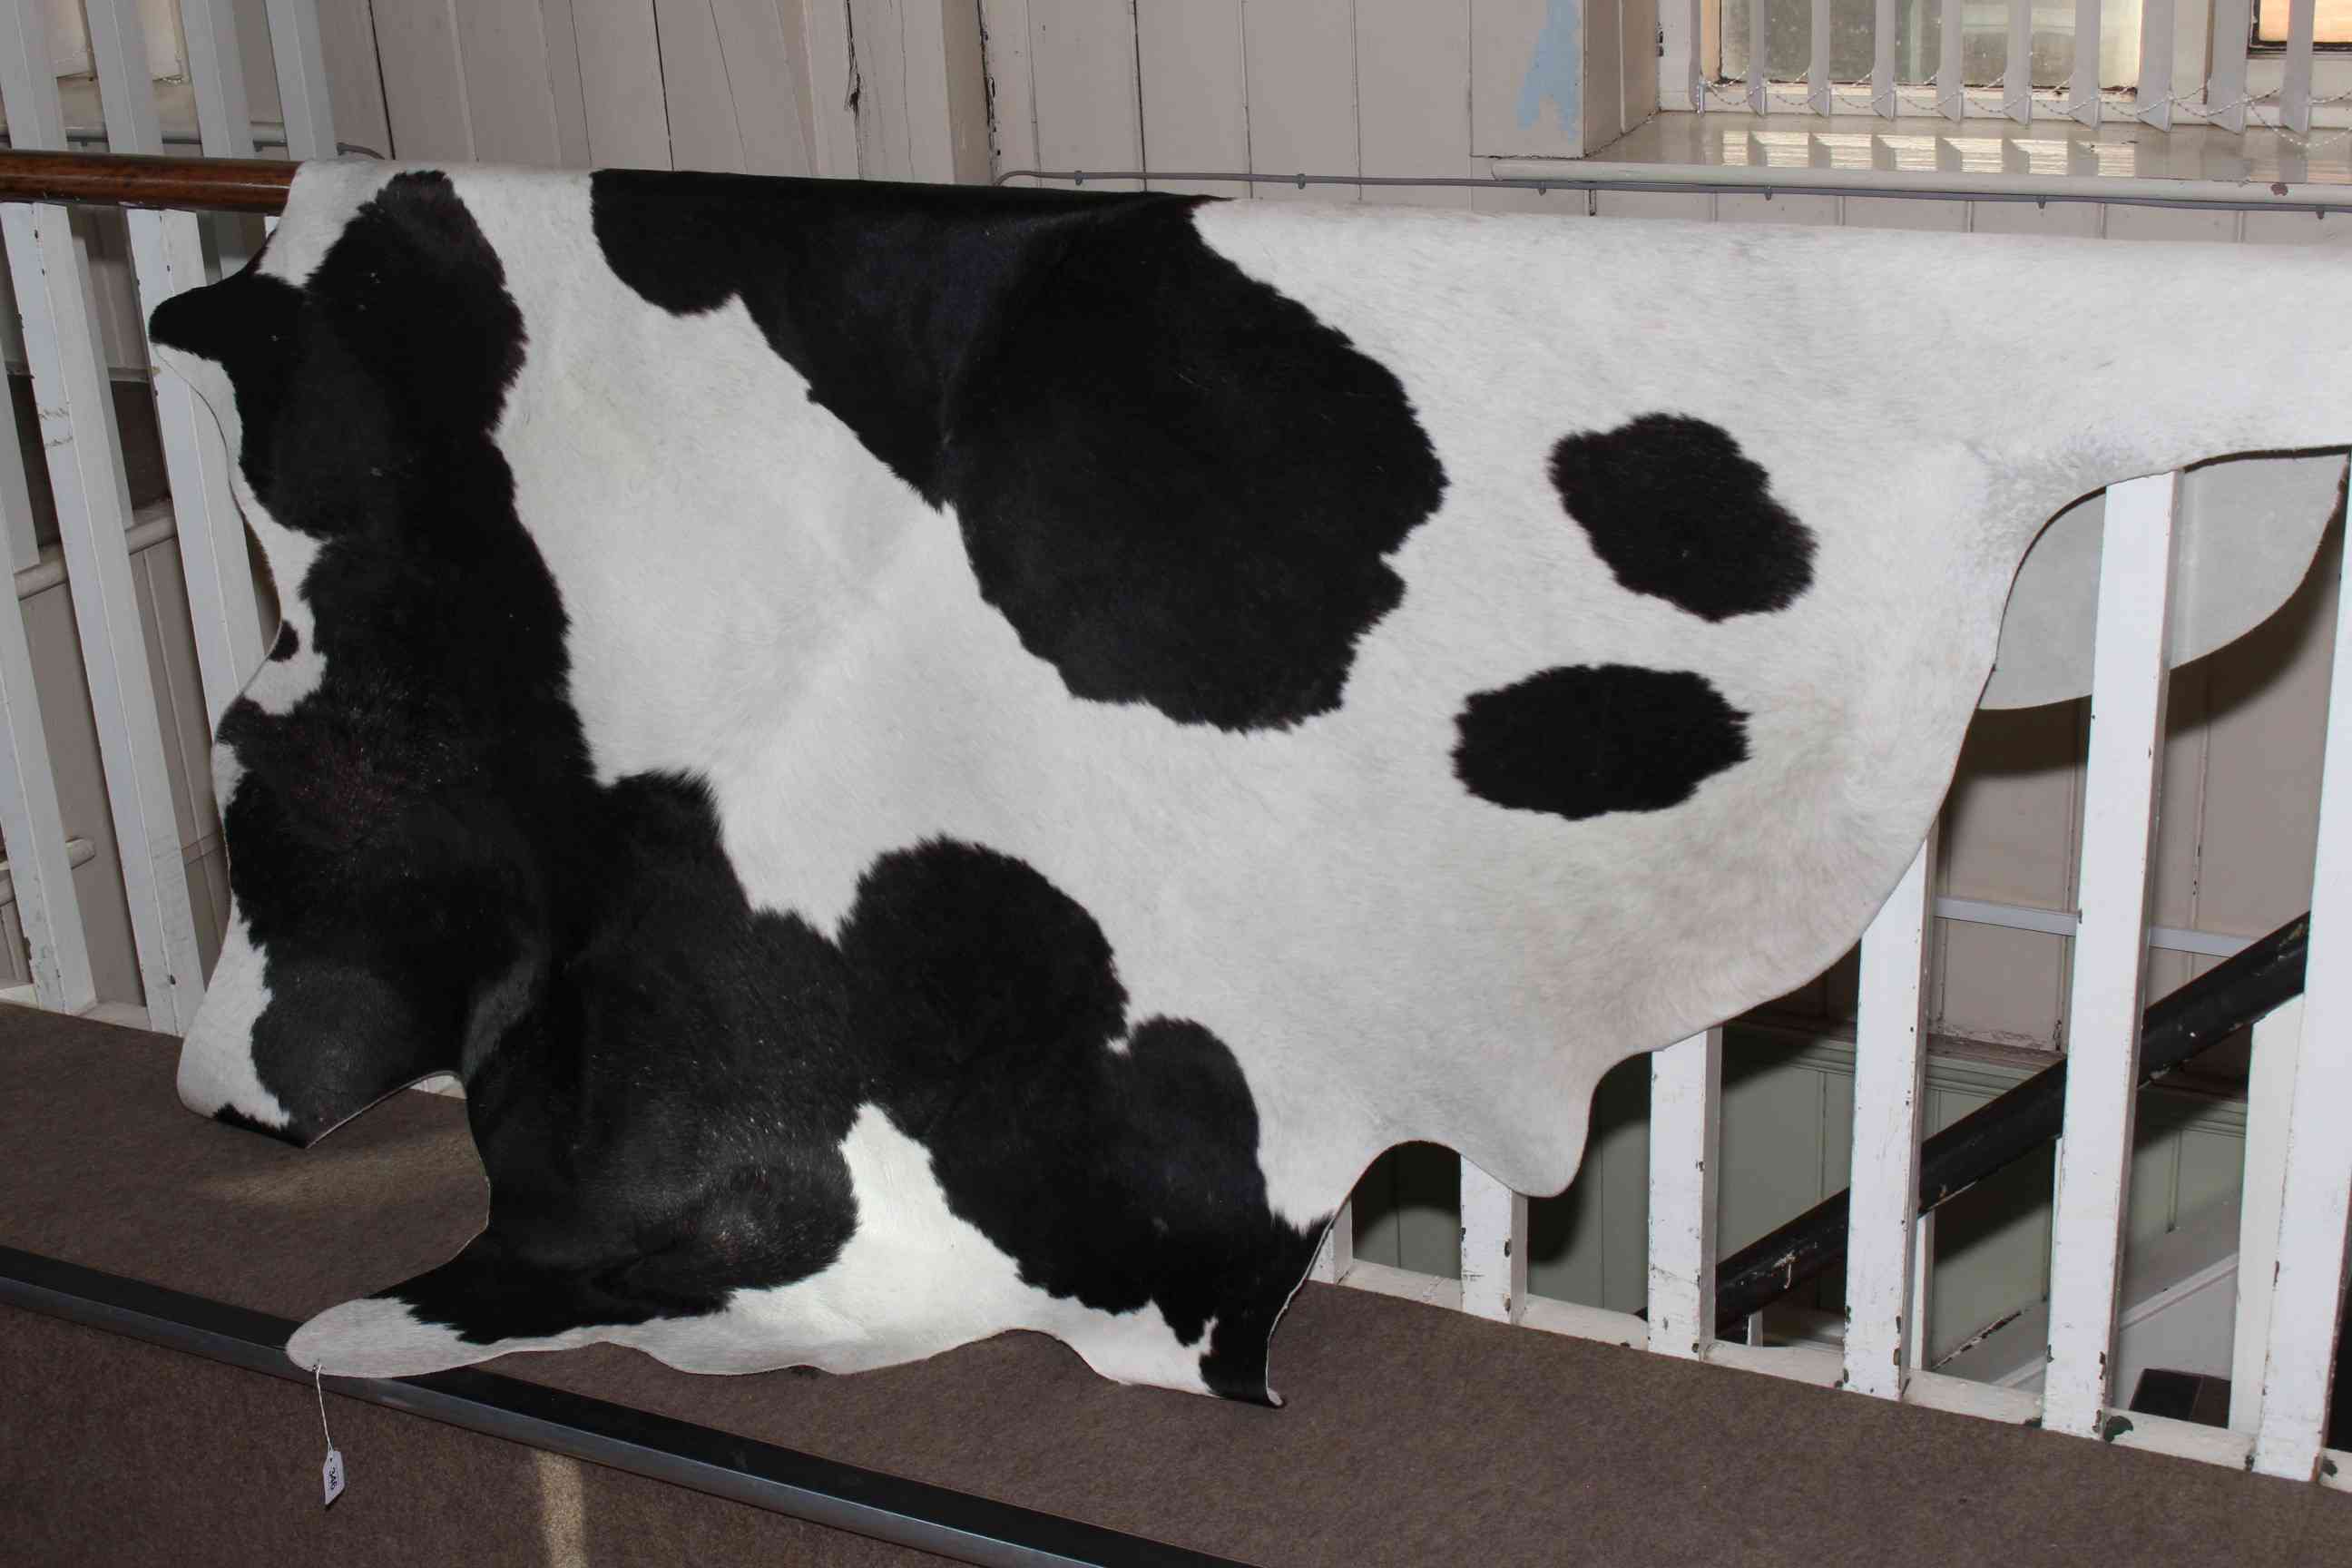 Cow hide rug.